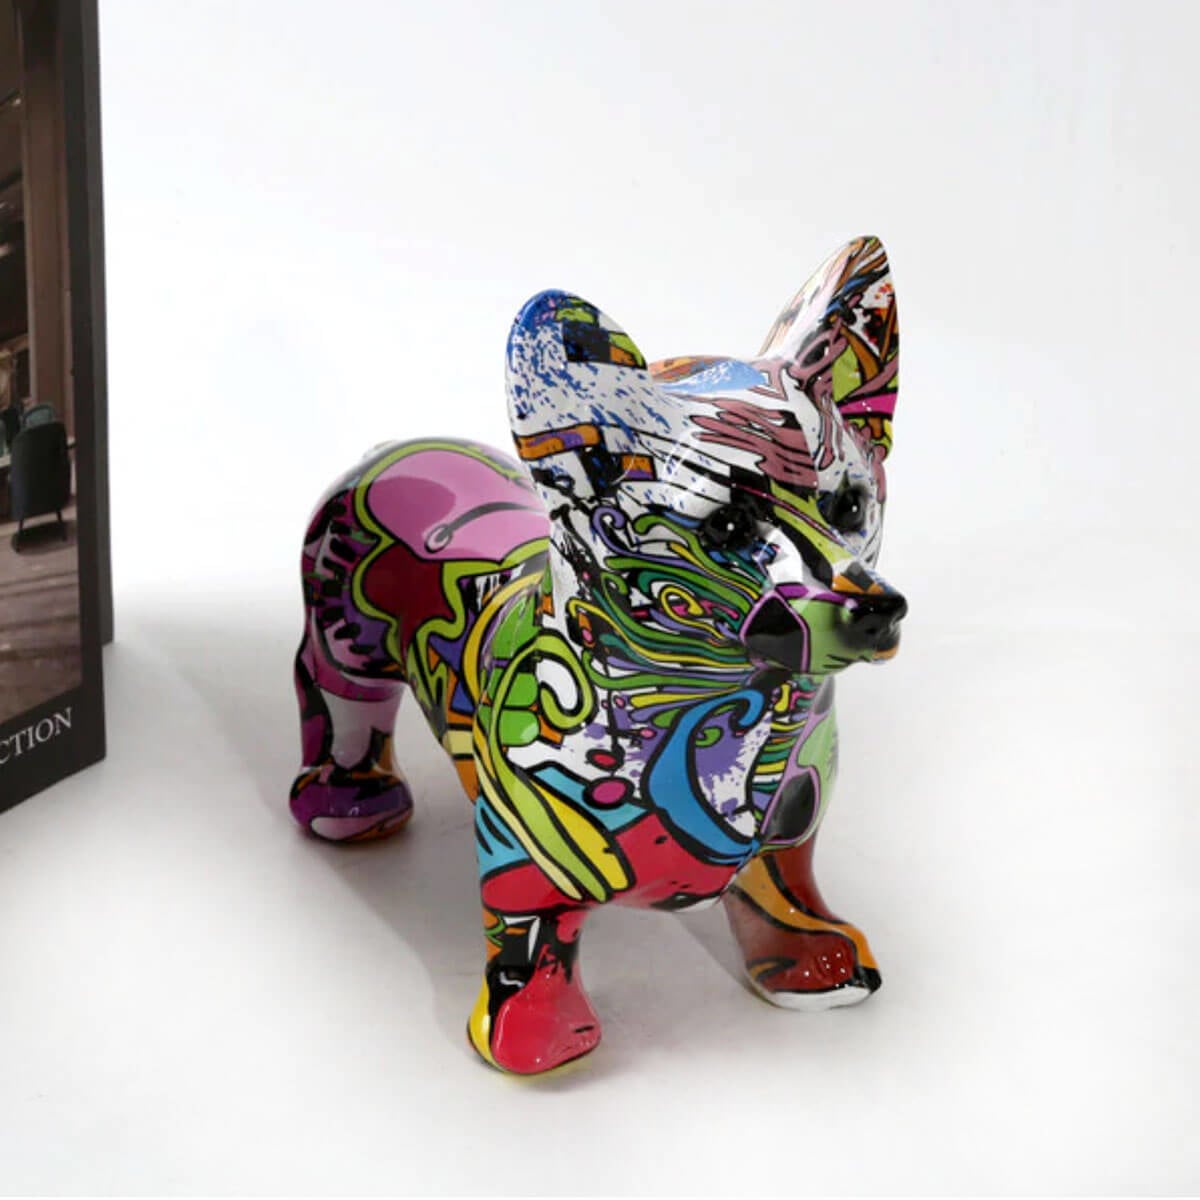 Statuie Câine Corgi Sculptură Artă Graffiti Colorată